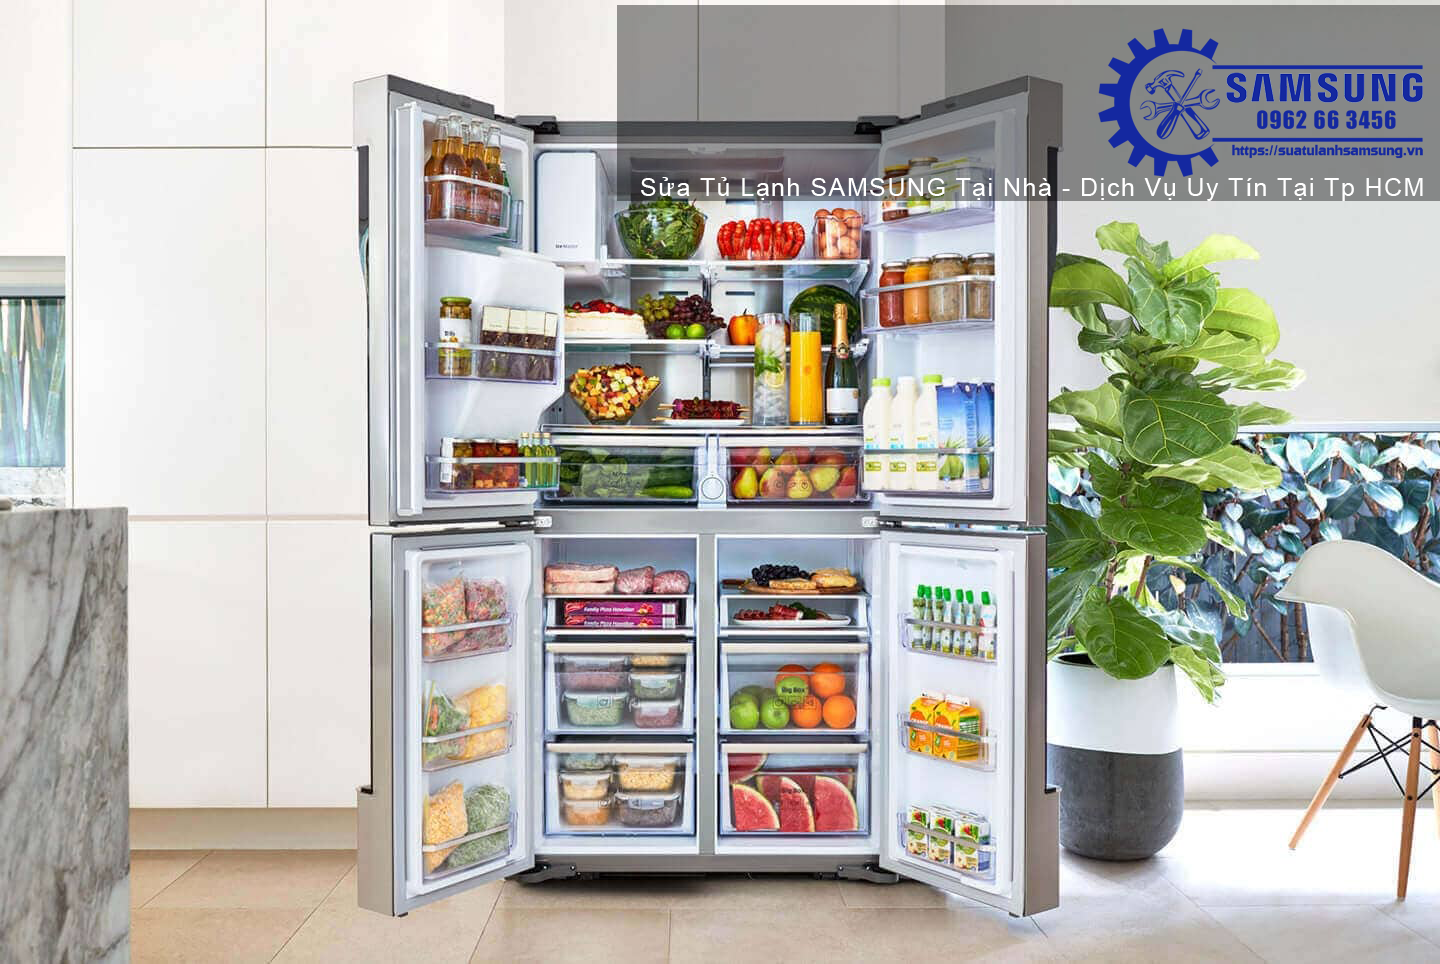 Đặt lịch dịch vụ sửa tủ lạnh Samsung tại Tp HCM, gọi về: 0938 718 718!